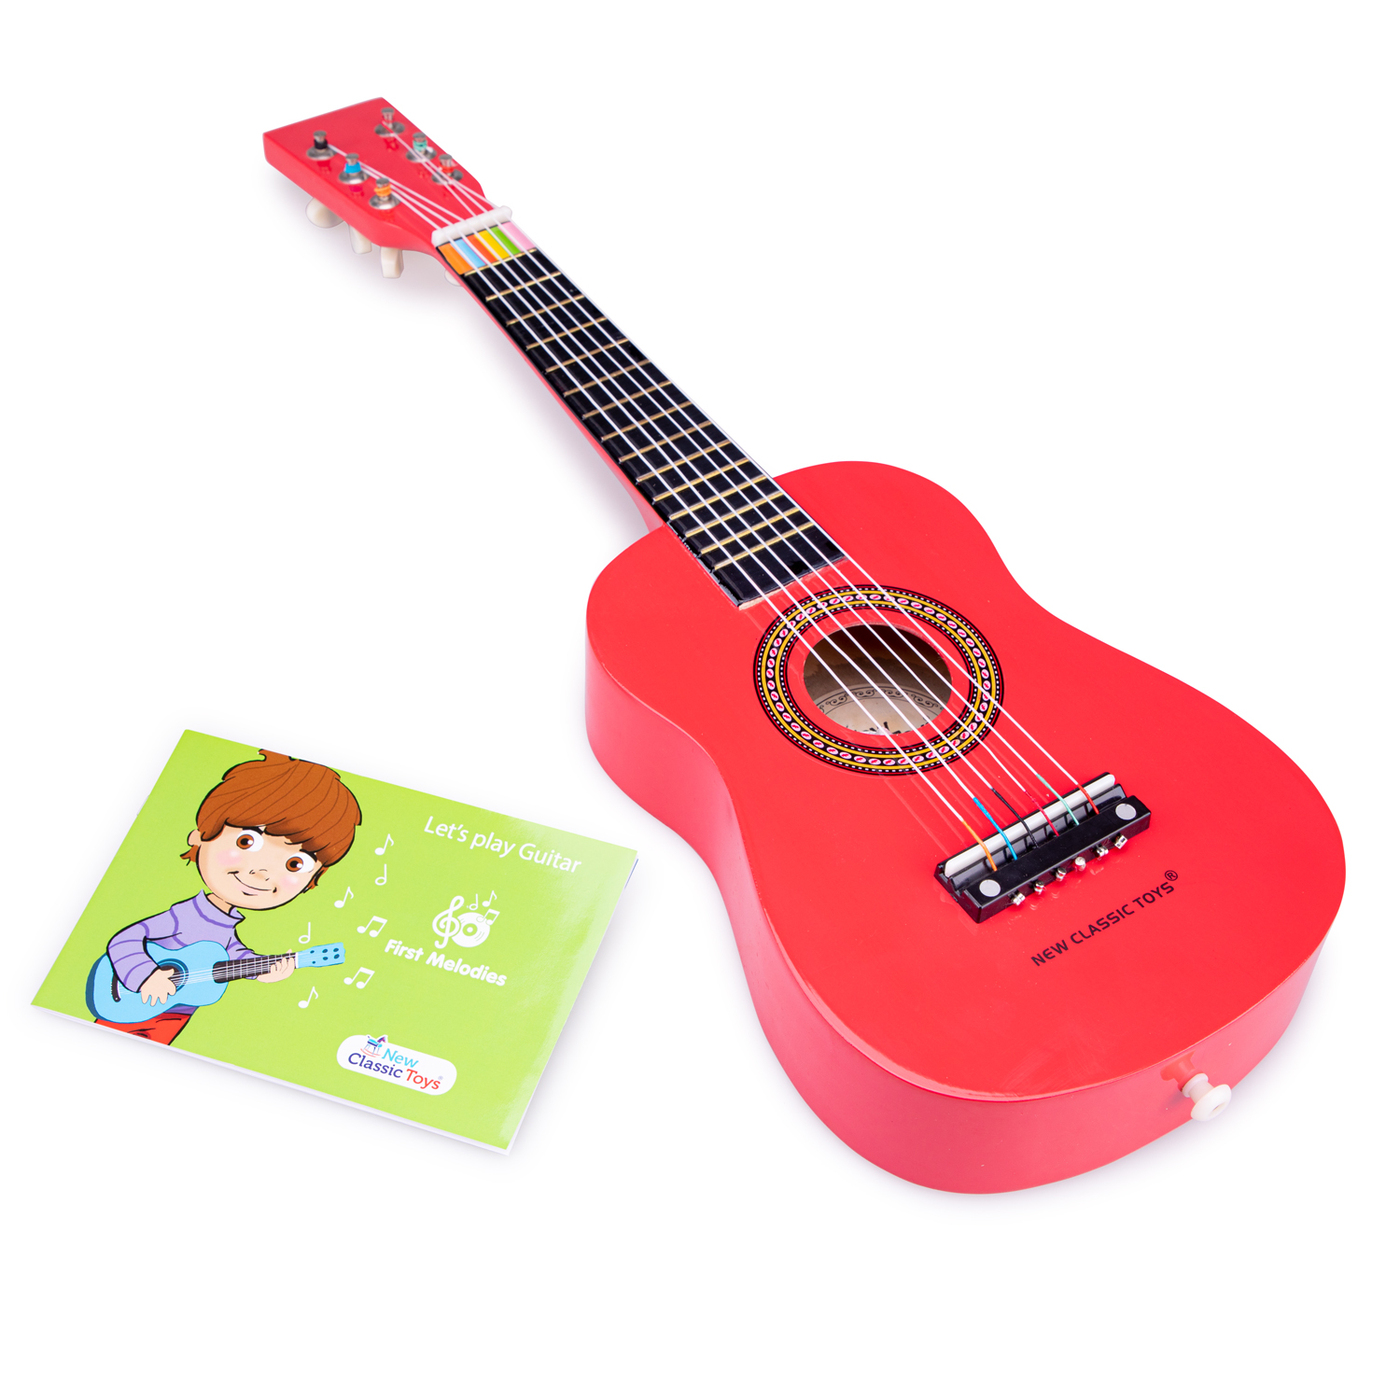 Купить гитару мальчику. Гитара 10303/10304 красный. Детская гитара. Игрушечная гитара. Гитара детская игрушечная.